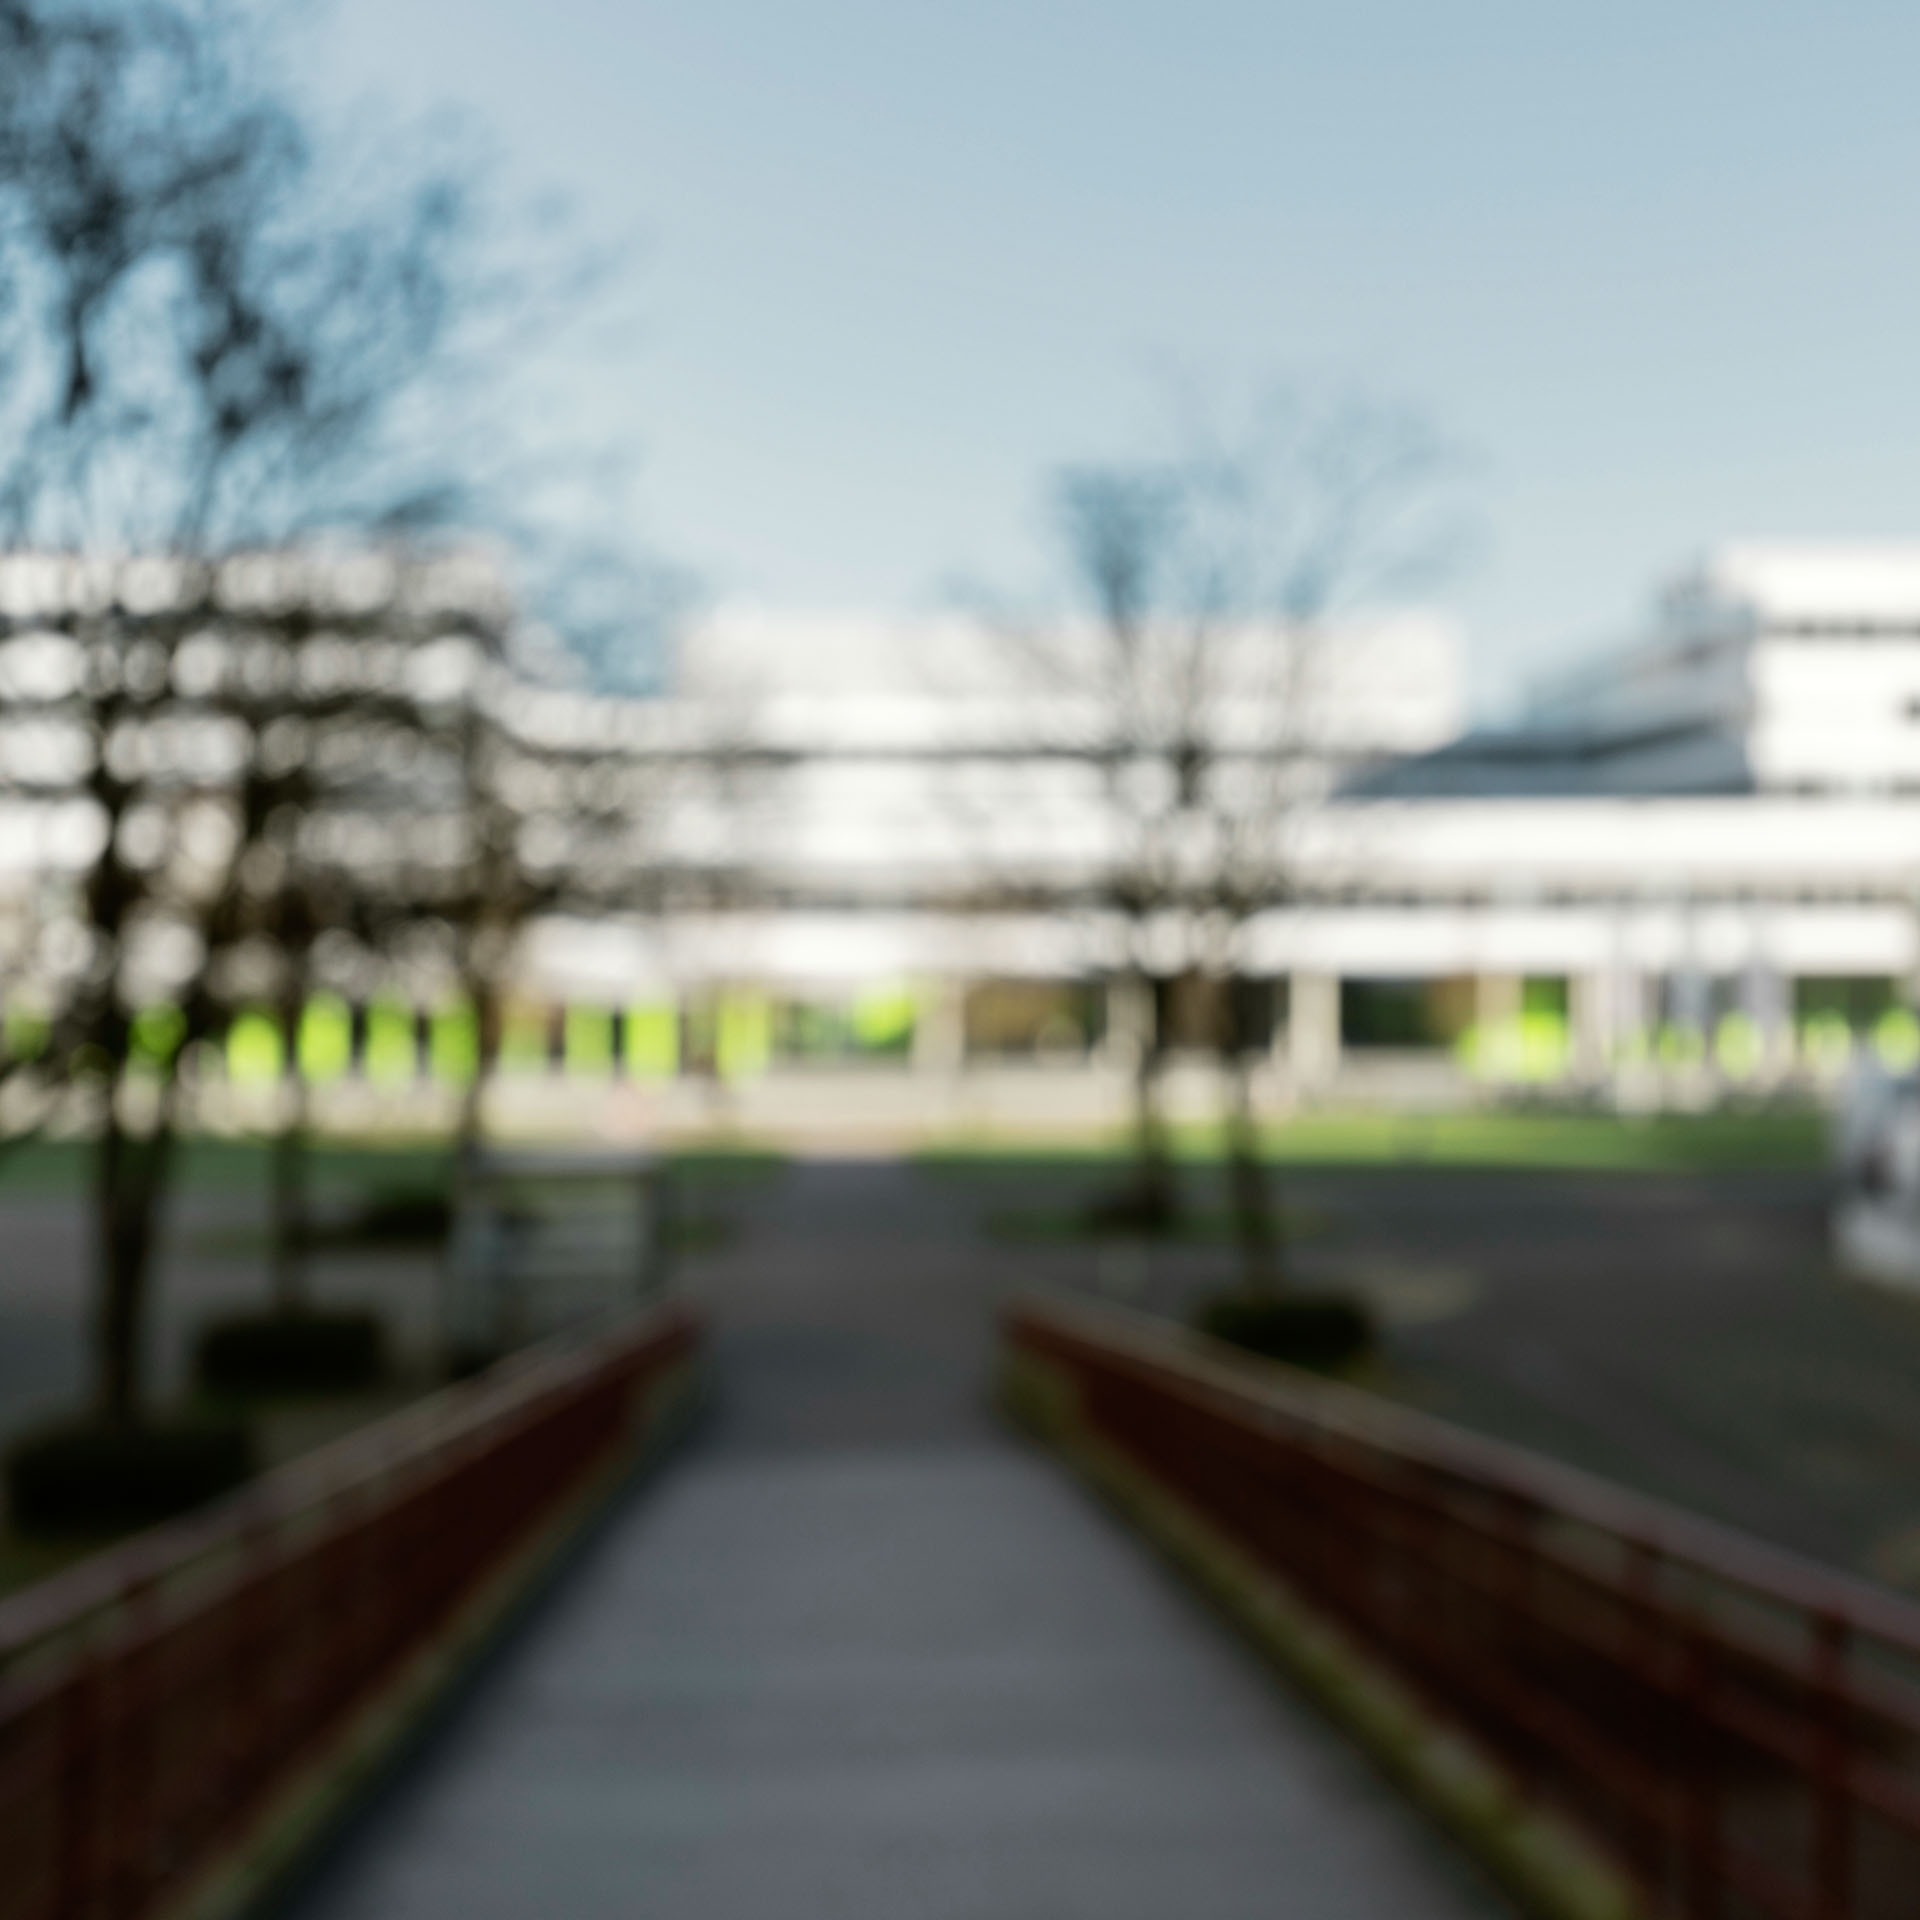 Campus der Universität Bielefeld